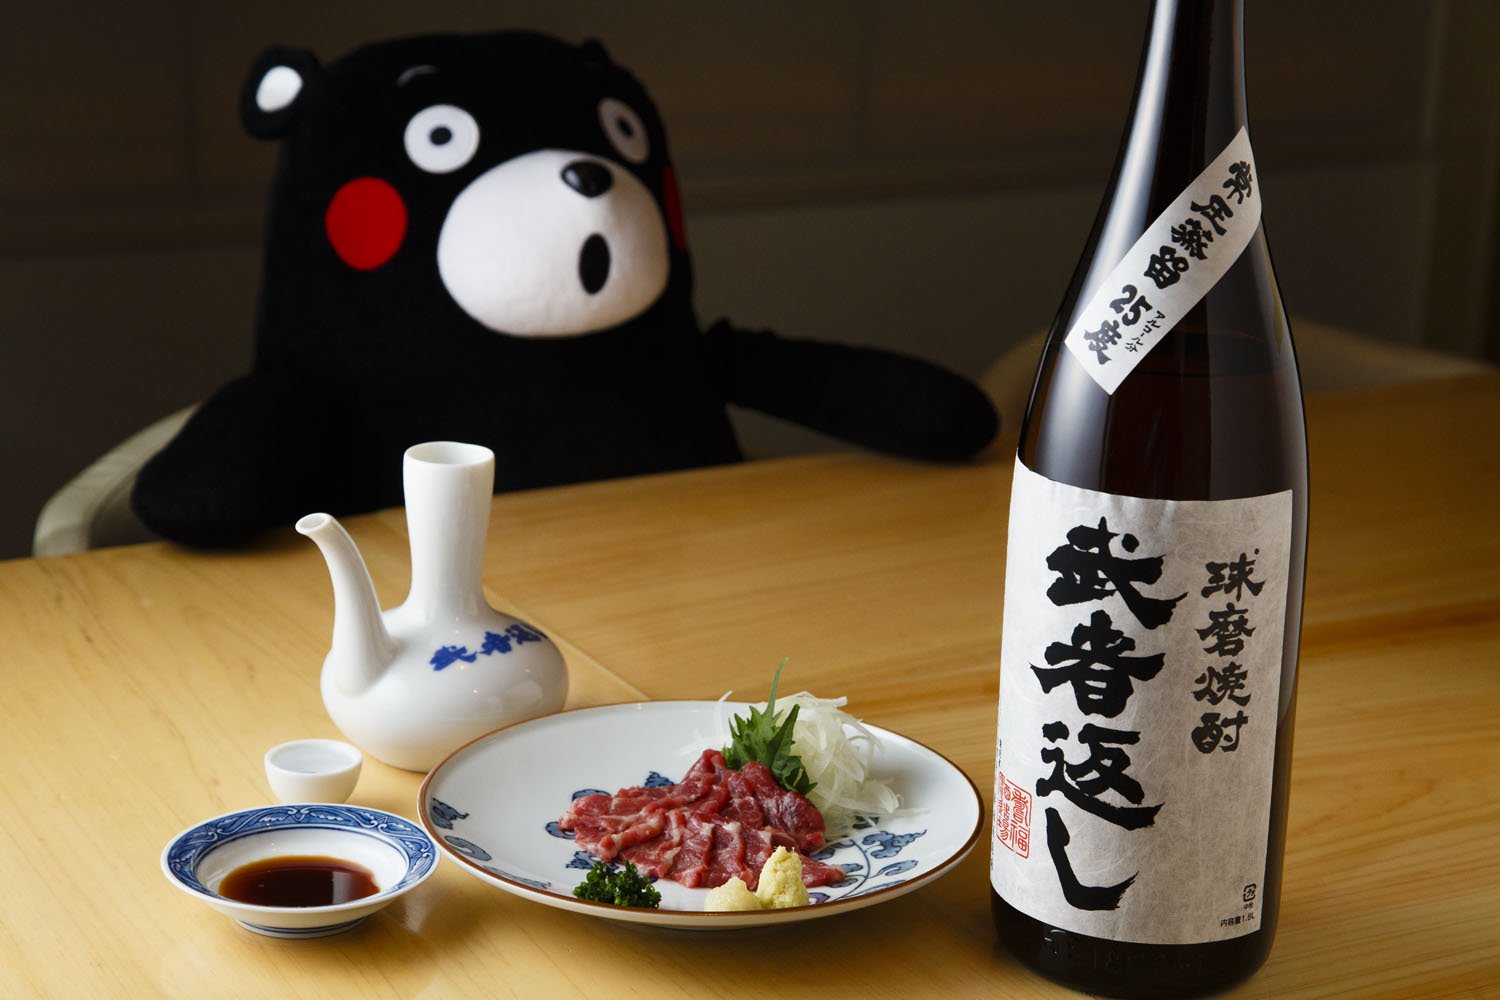 焼酎は酒器に入れてお猪口で飲むという熊本の伝統スタイル。熊本直送の馬刺し900円。店のマスコットのくまモンは常連客からのプレゼント。